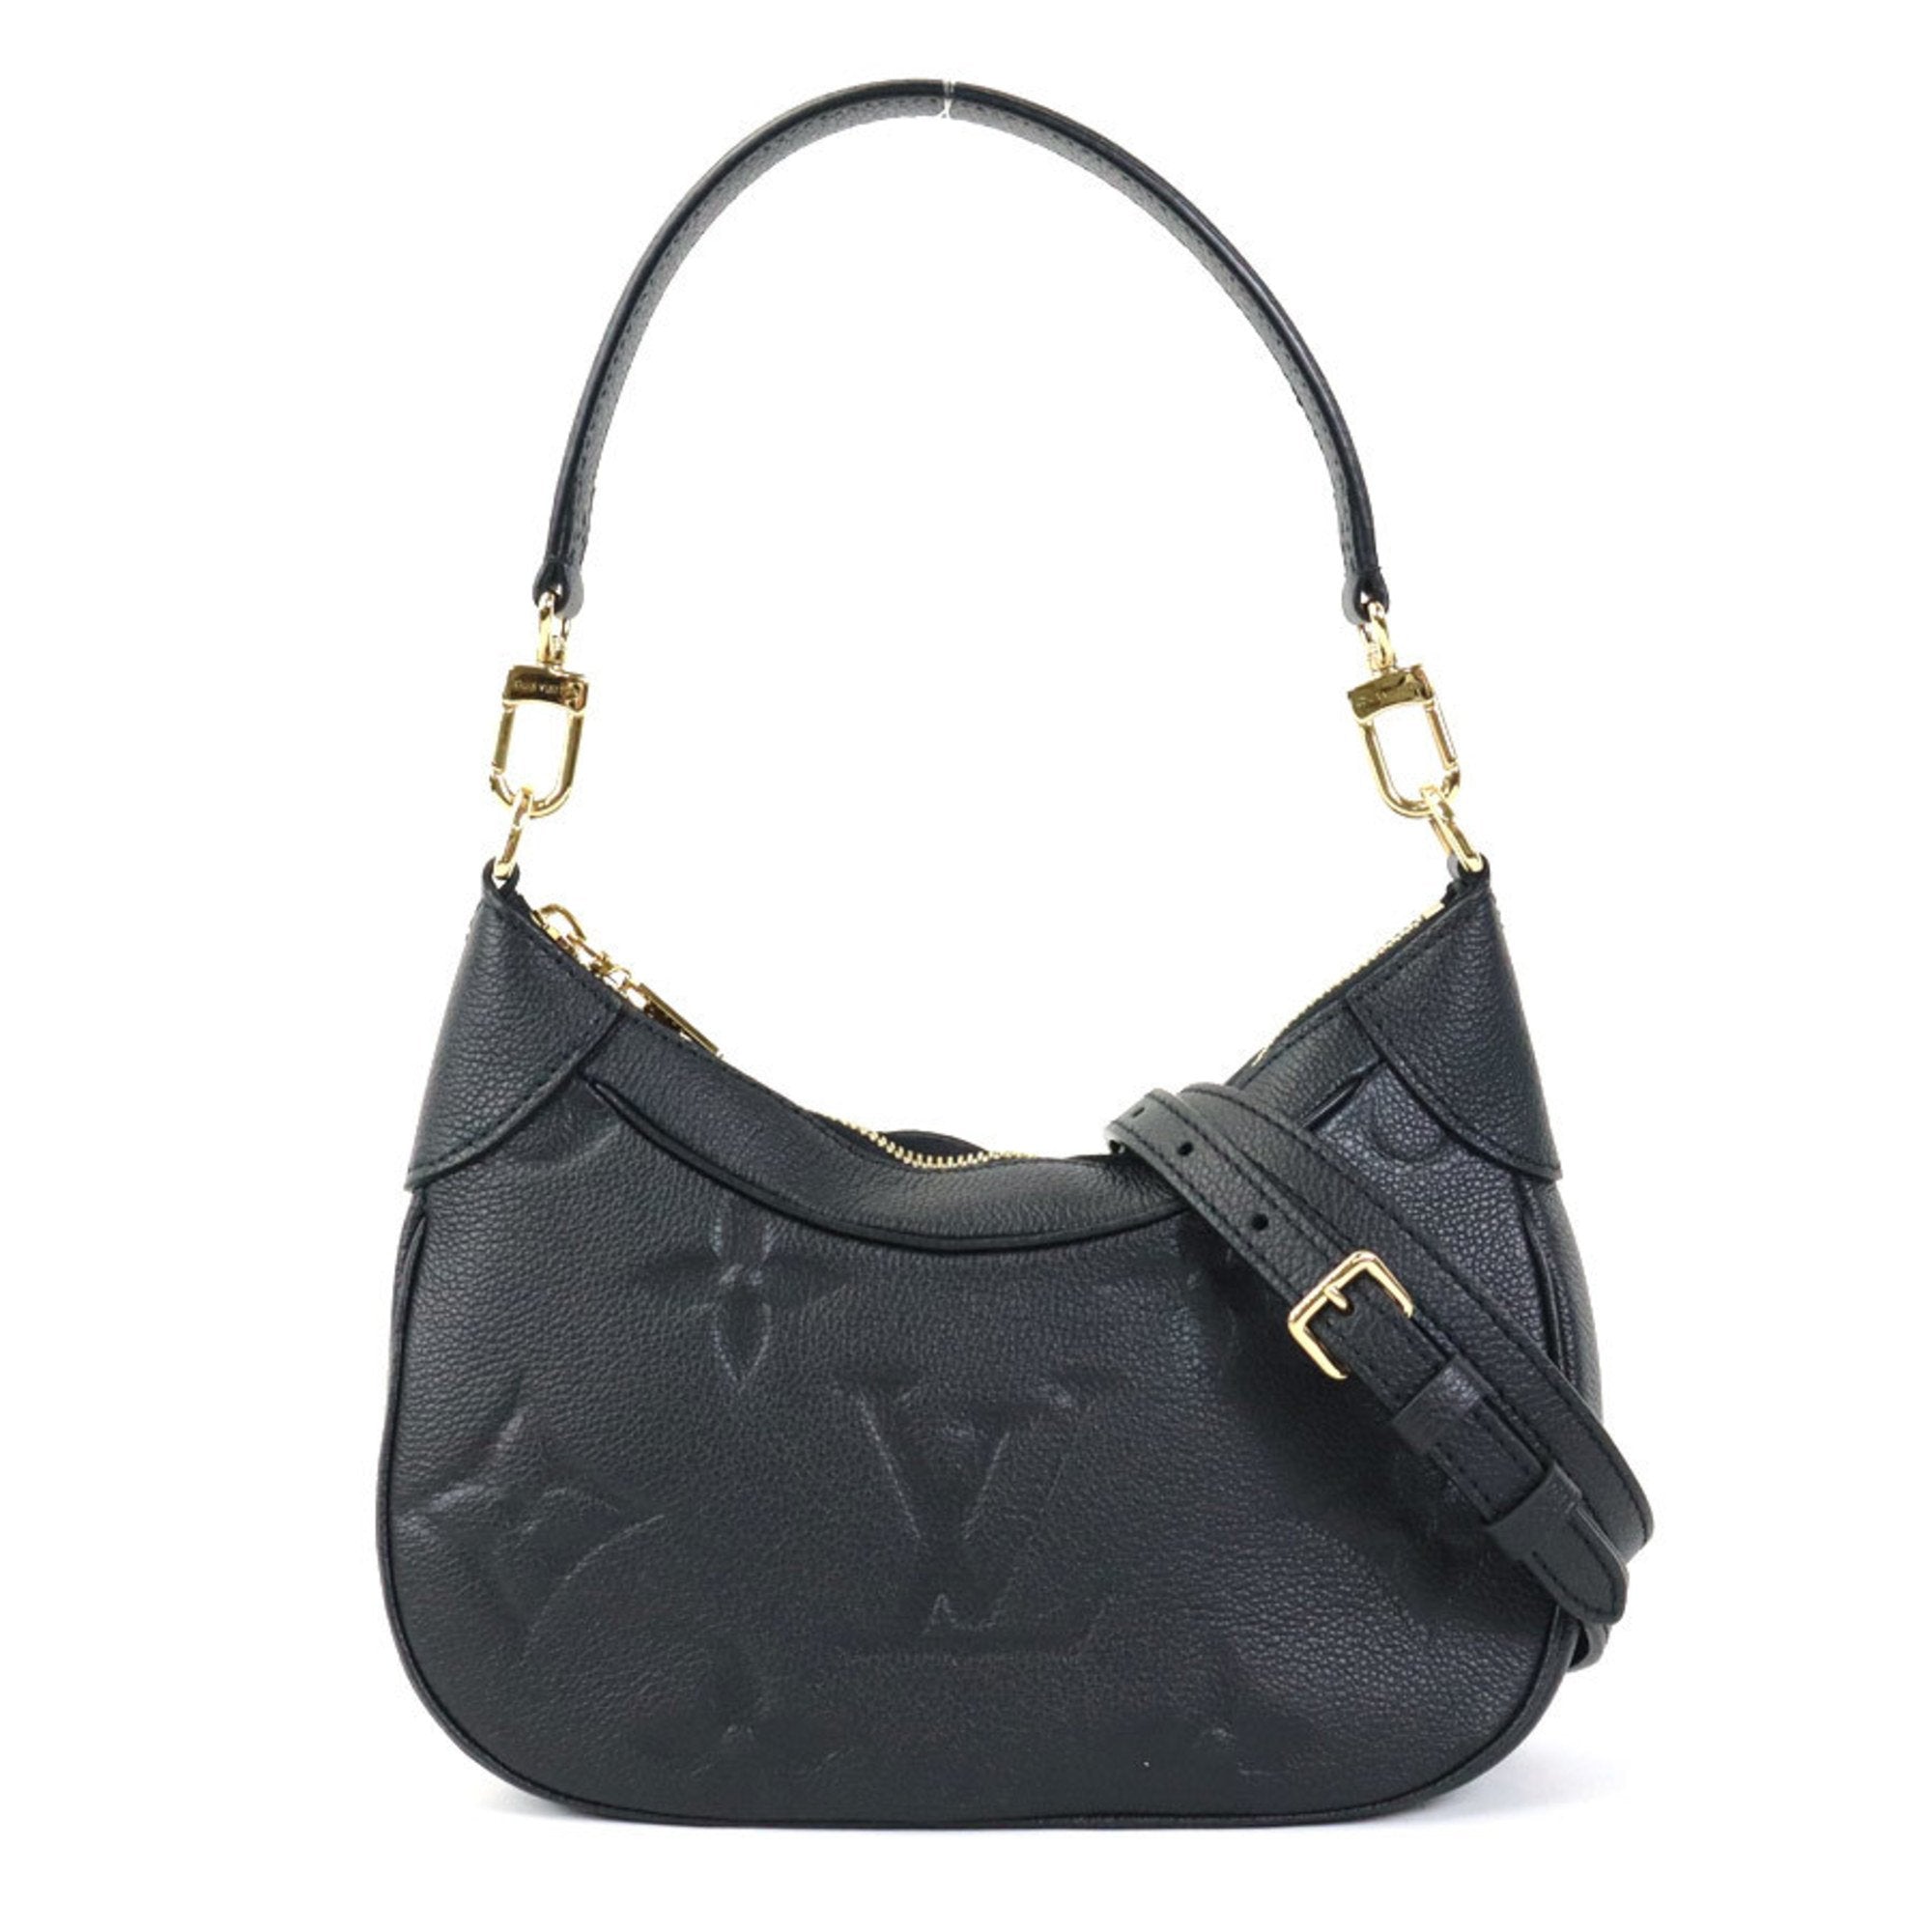 Bagatelle leather handbag Louis Vuitton Multicolour in Leather